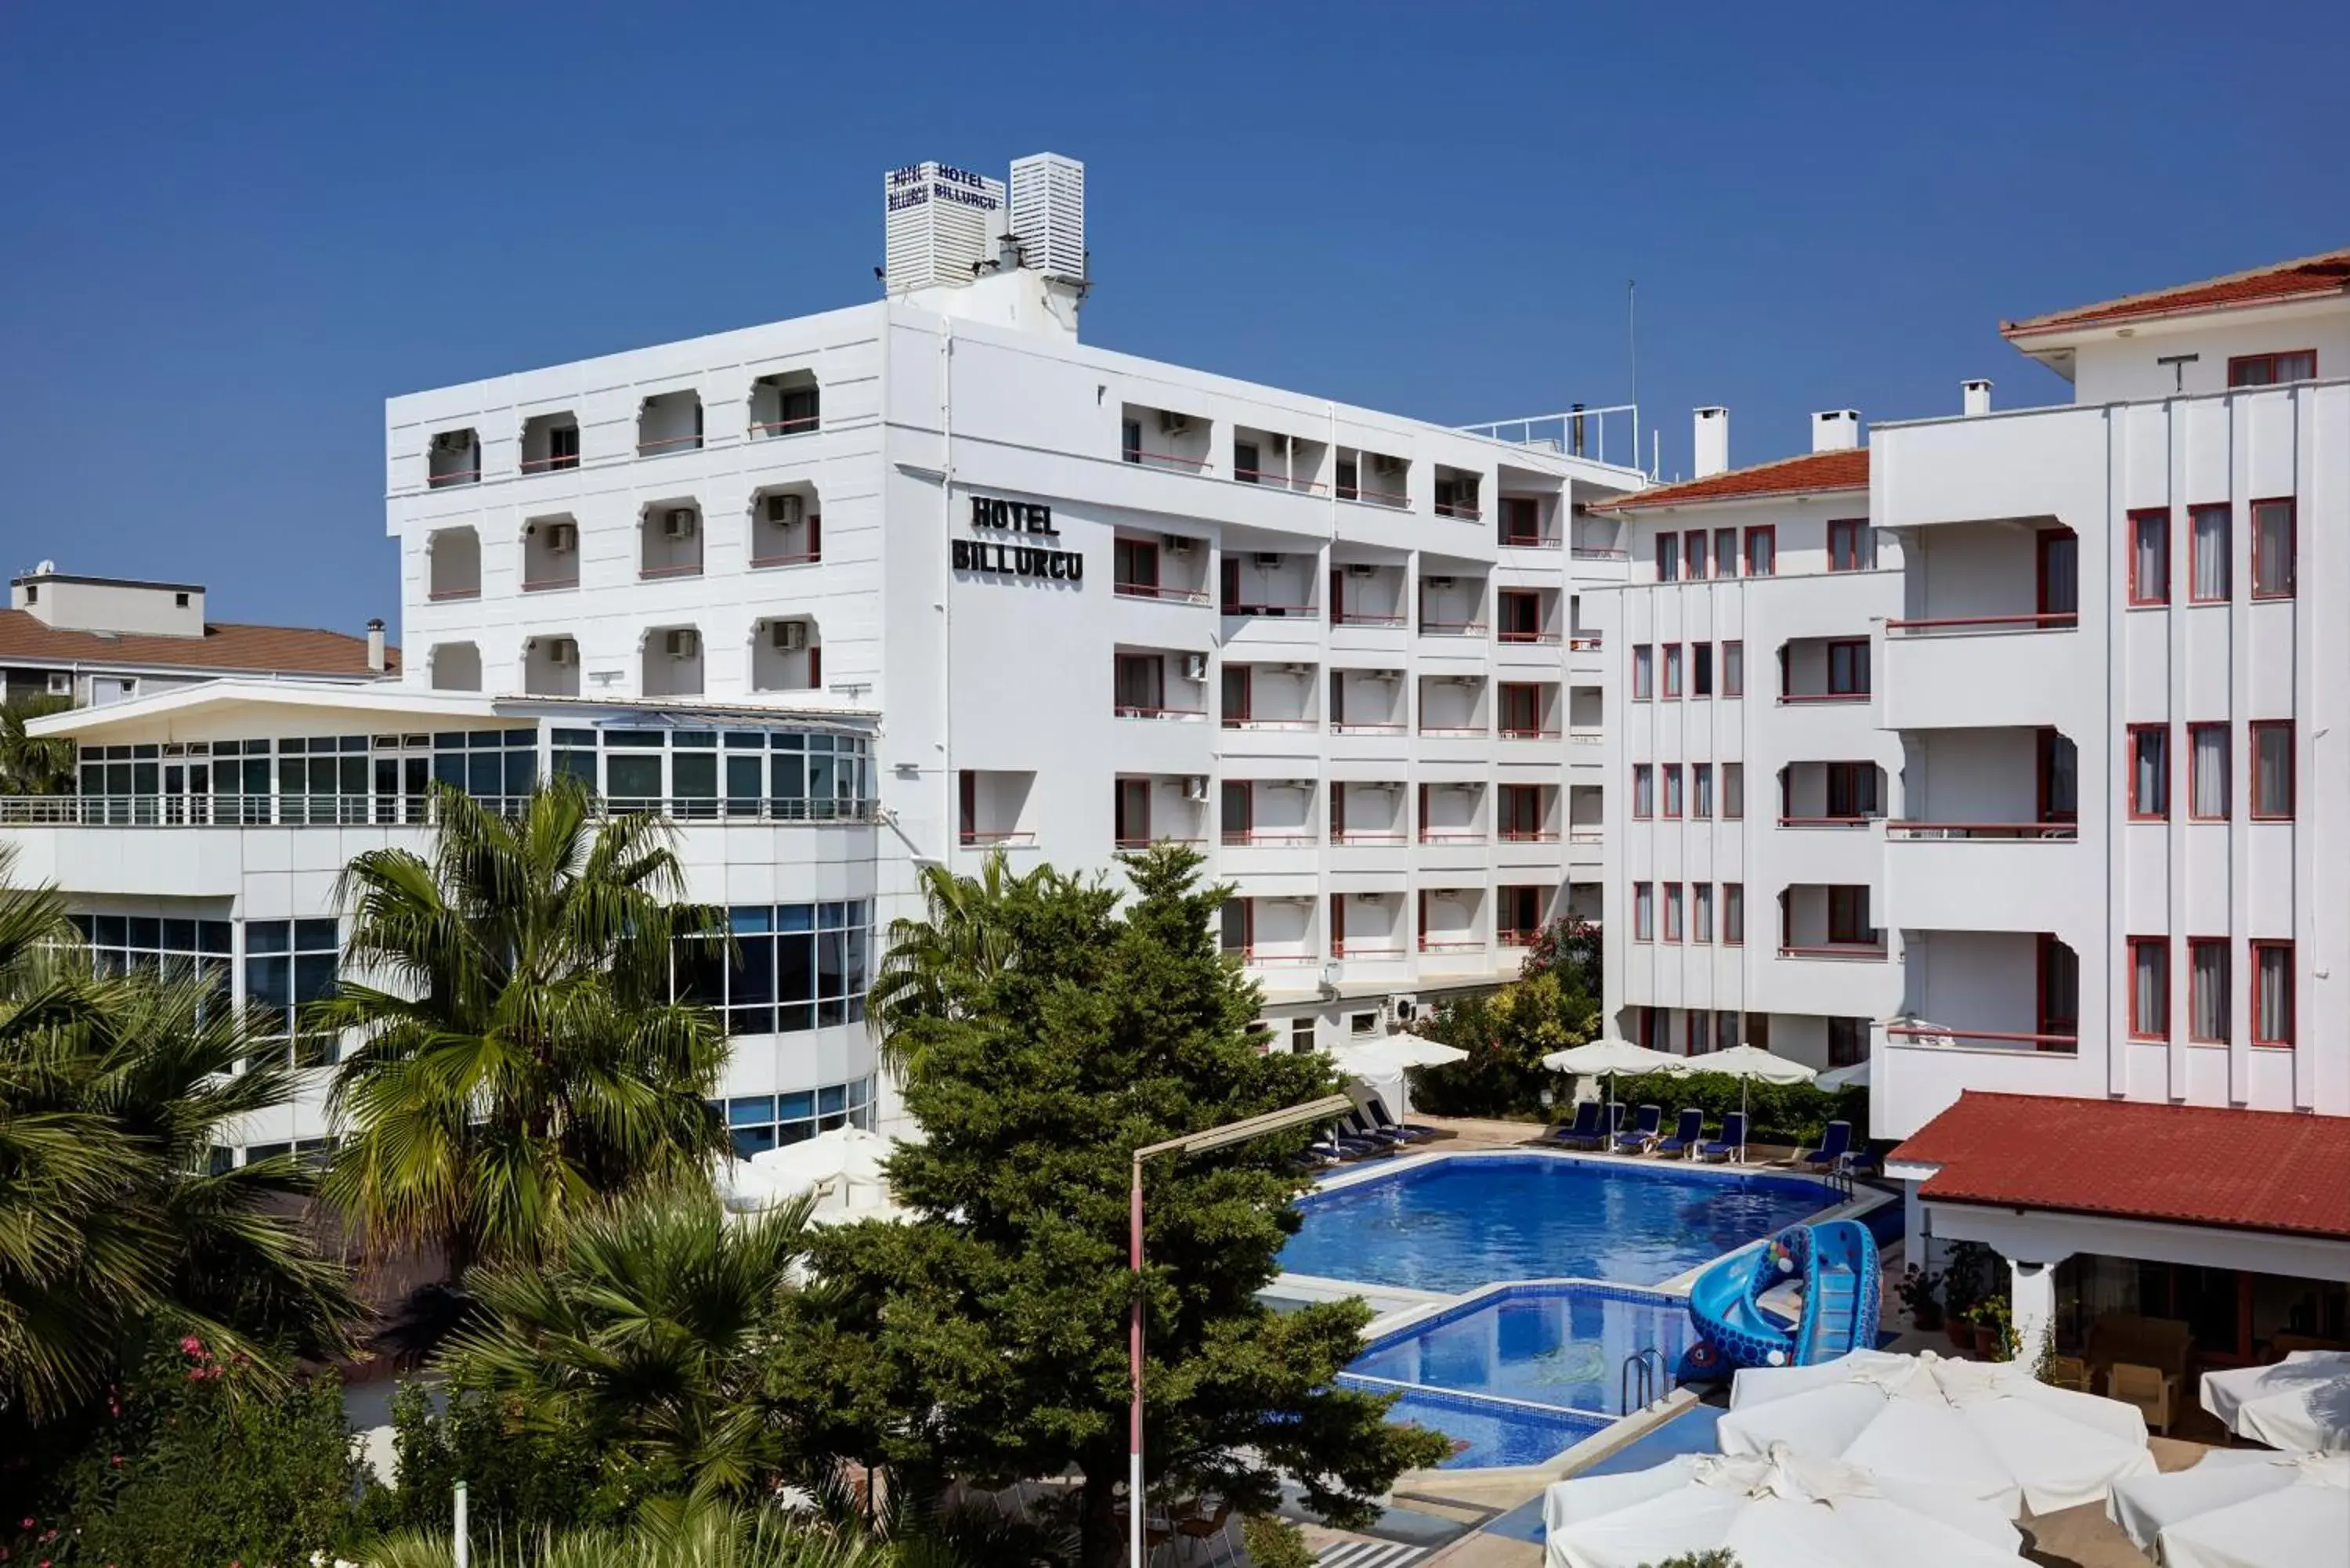 Property building, Pool View in Hotel Billurcu